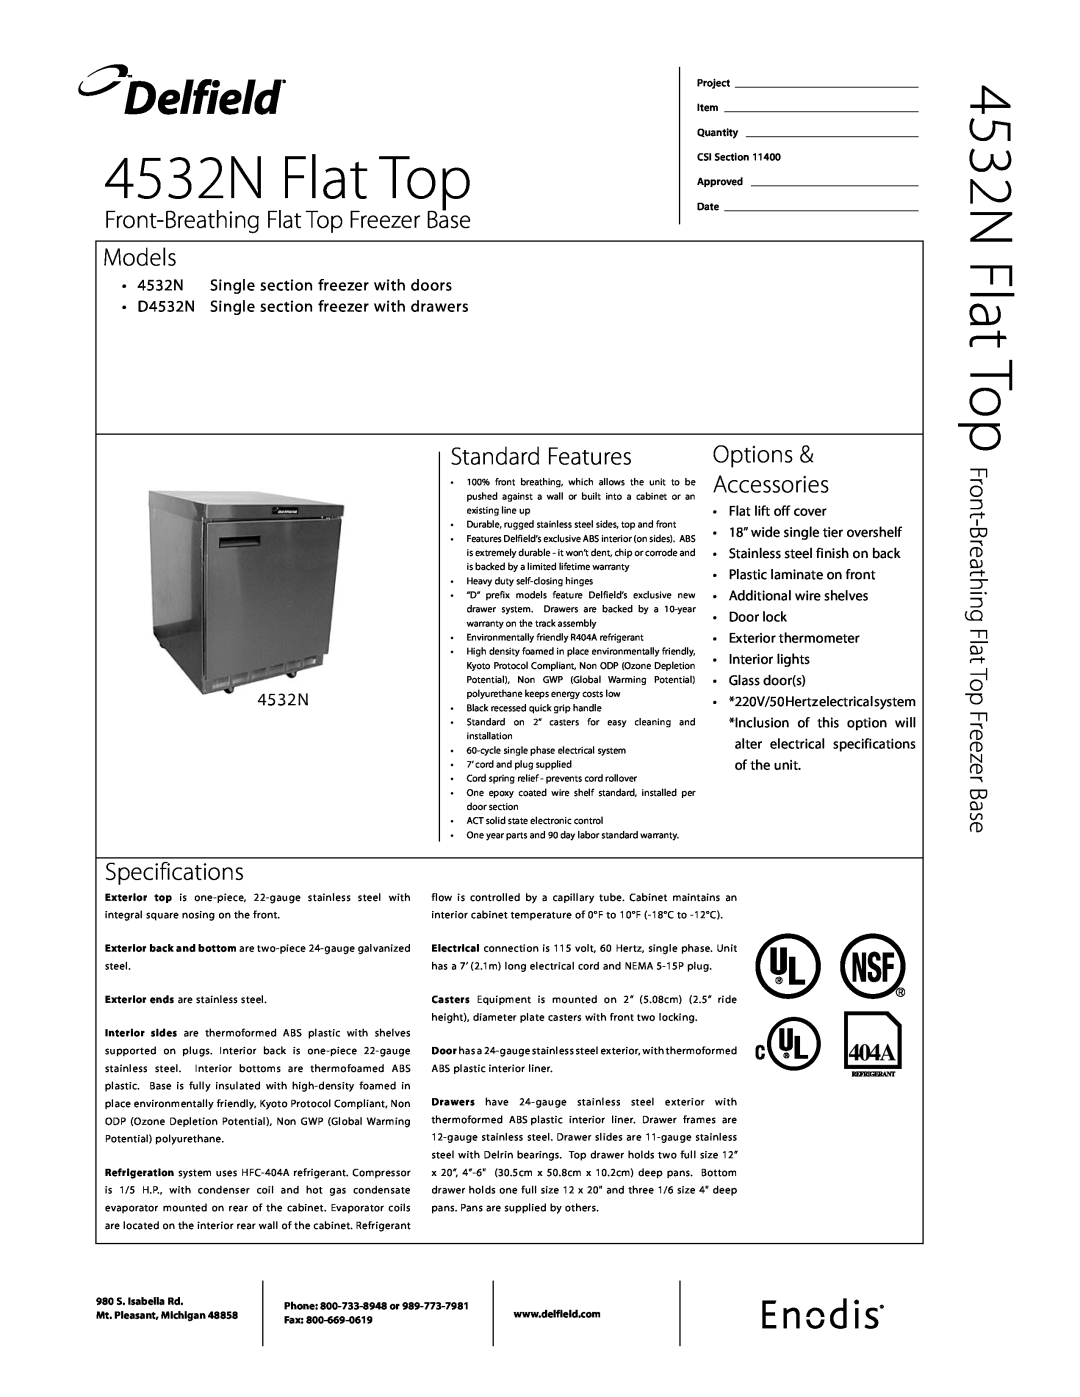 Delfield specifications 4532N Single section freezer with doors, D4532N Single section freezer with drawers, Delfield 